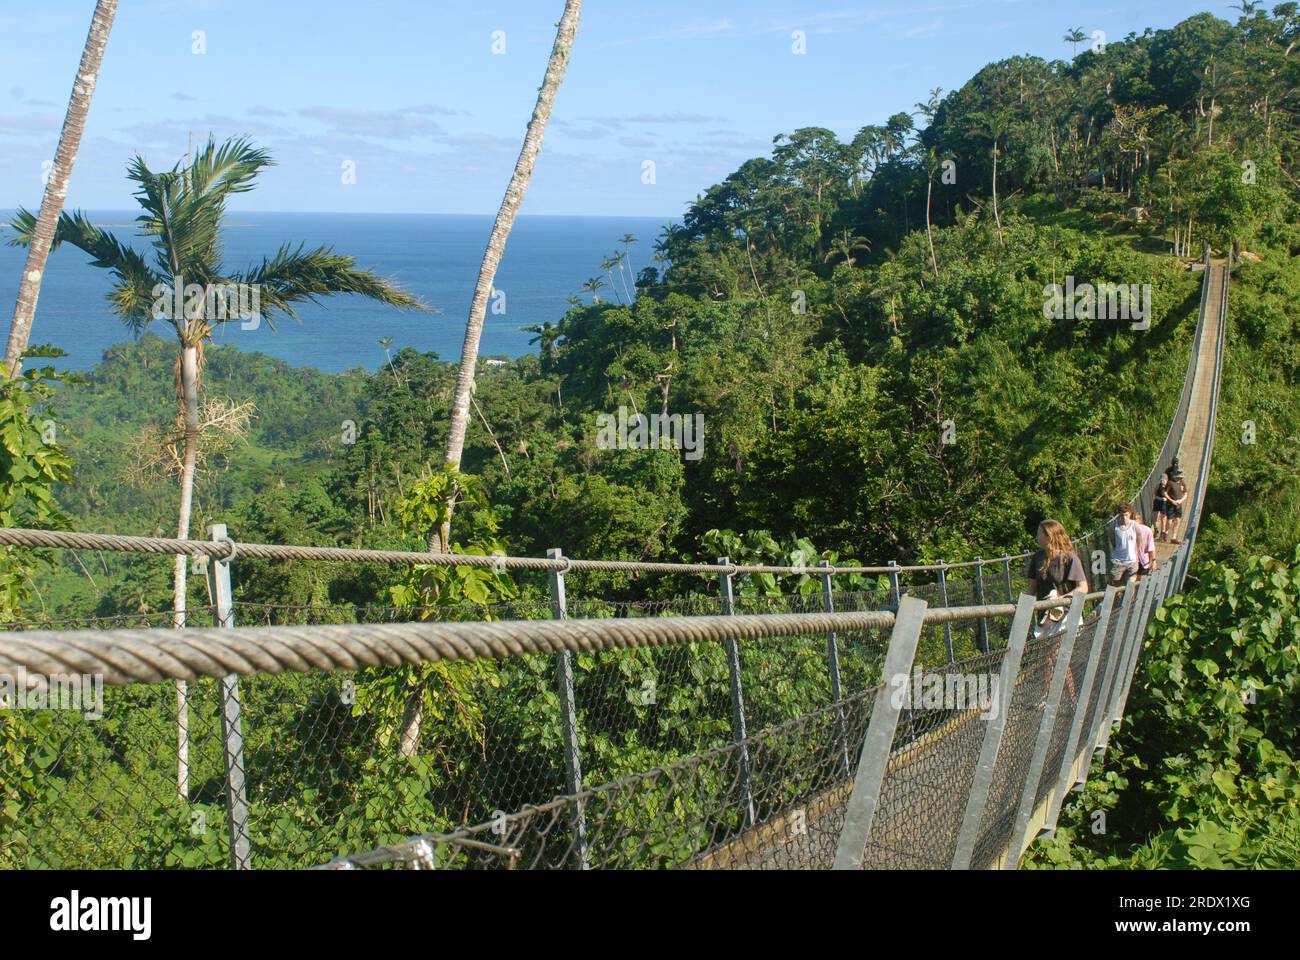 Turistas en el puente del cielo de Vanuatu, Devil's Point Rd, Port Vila, Vanuatu. Foto de stock